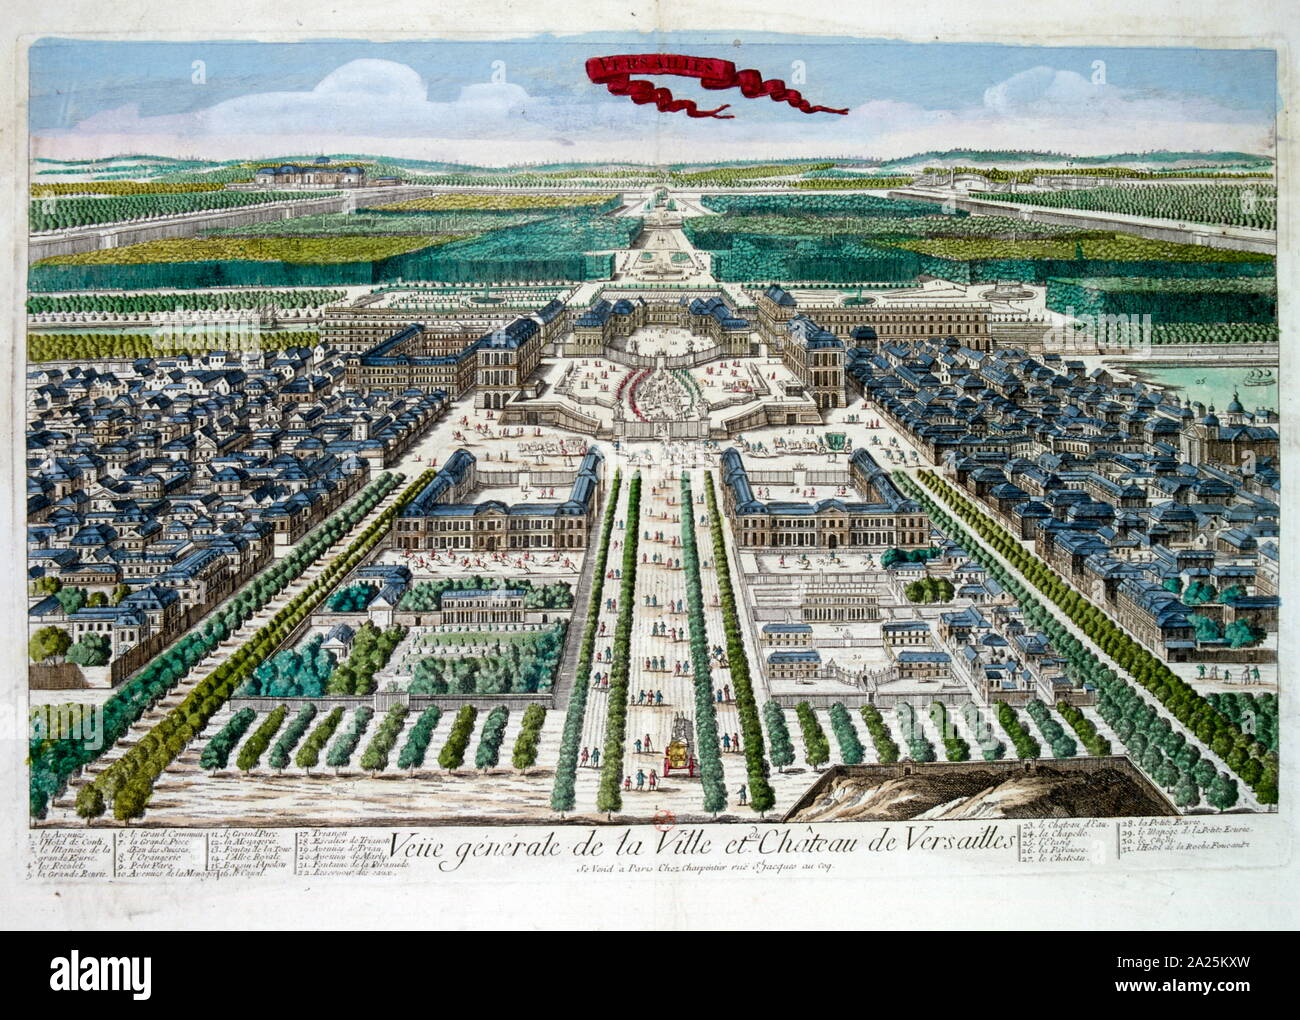 18ème siècle illustration couleur, le château de Versailles (château de Versailles) un château royal à Versailles dans la région Île-de-France de France. Versailles fut le siège du pouvoir politique dans le royaume de France à partir de 1682, lorsque le roi Louis XIV déplacé la cour royale de Paris, jusqu'à ce que la famille royale a été forcé de retourner dans la capitale en octobre 1789, dans les trois mois après le début de la Révolution française. Banque D'Images